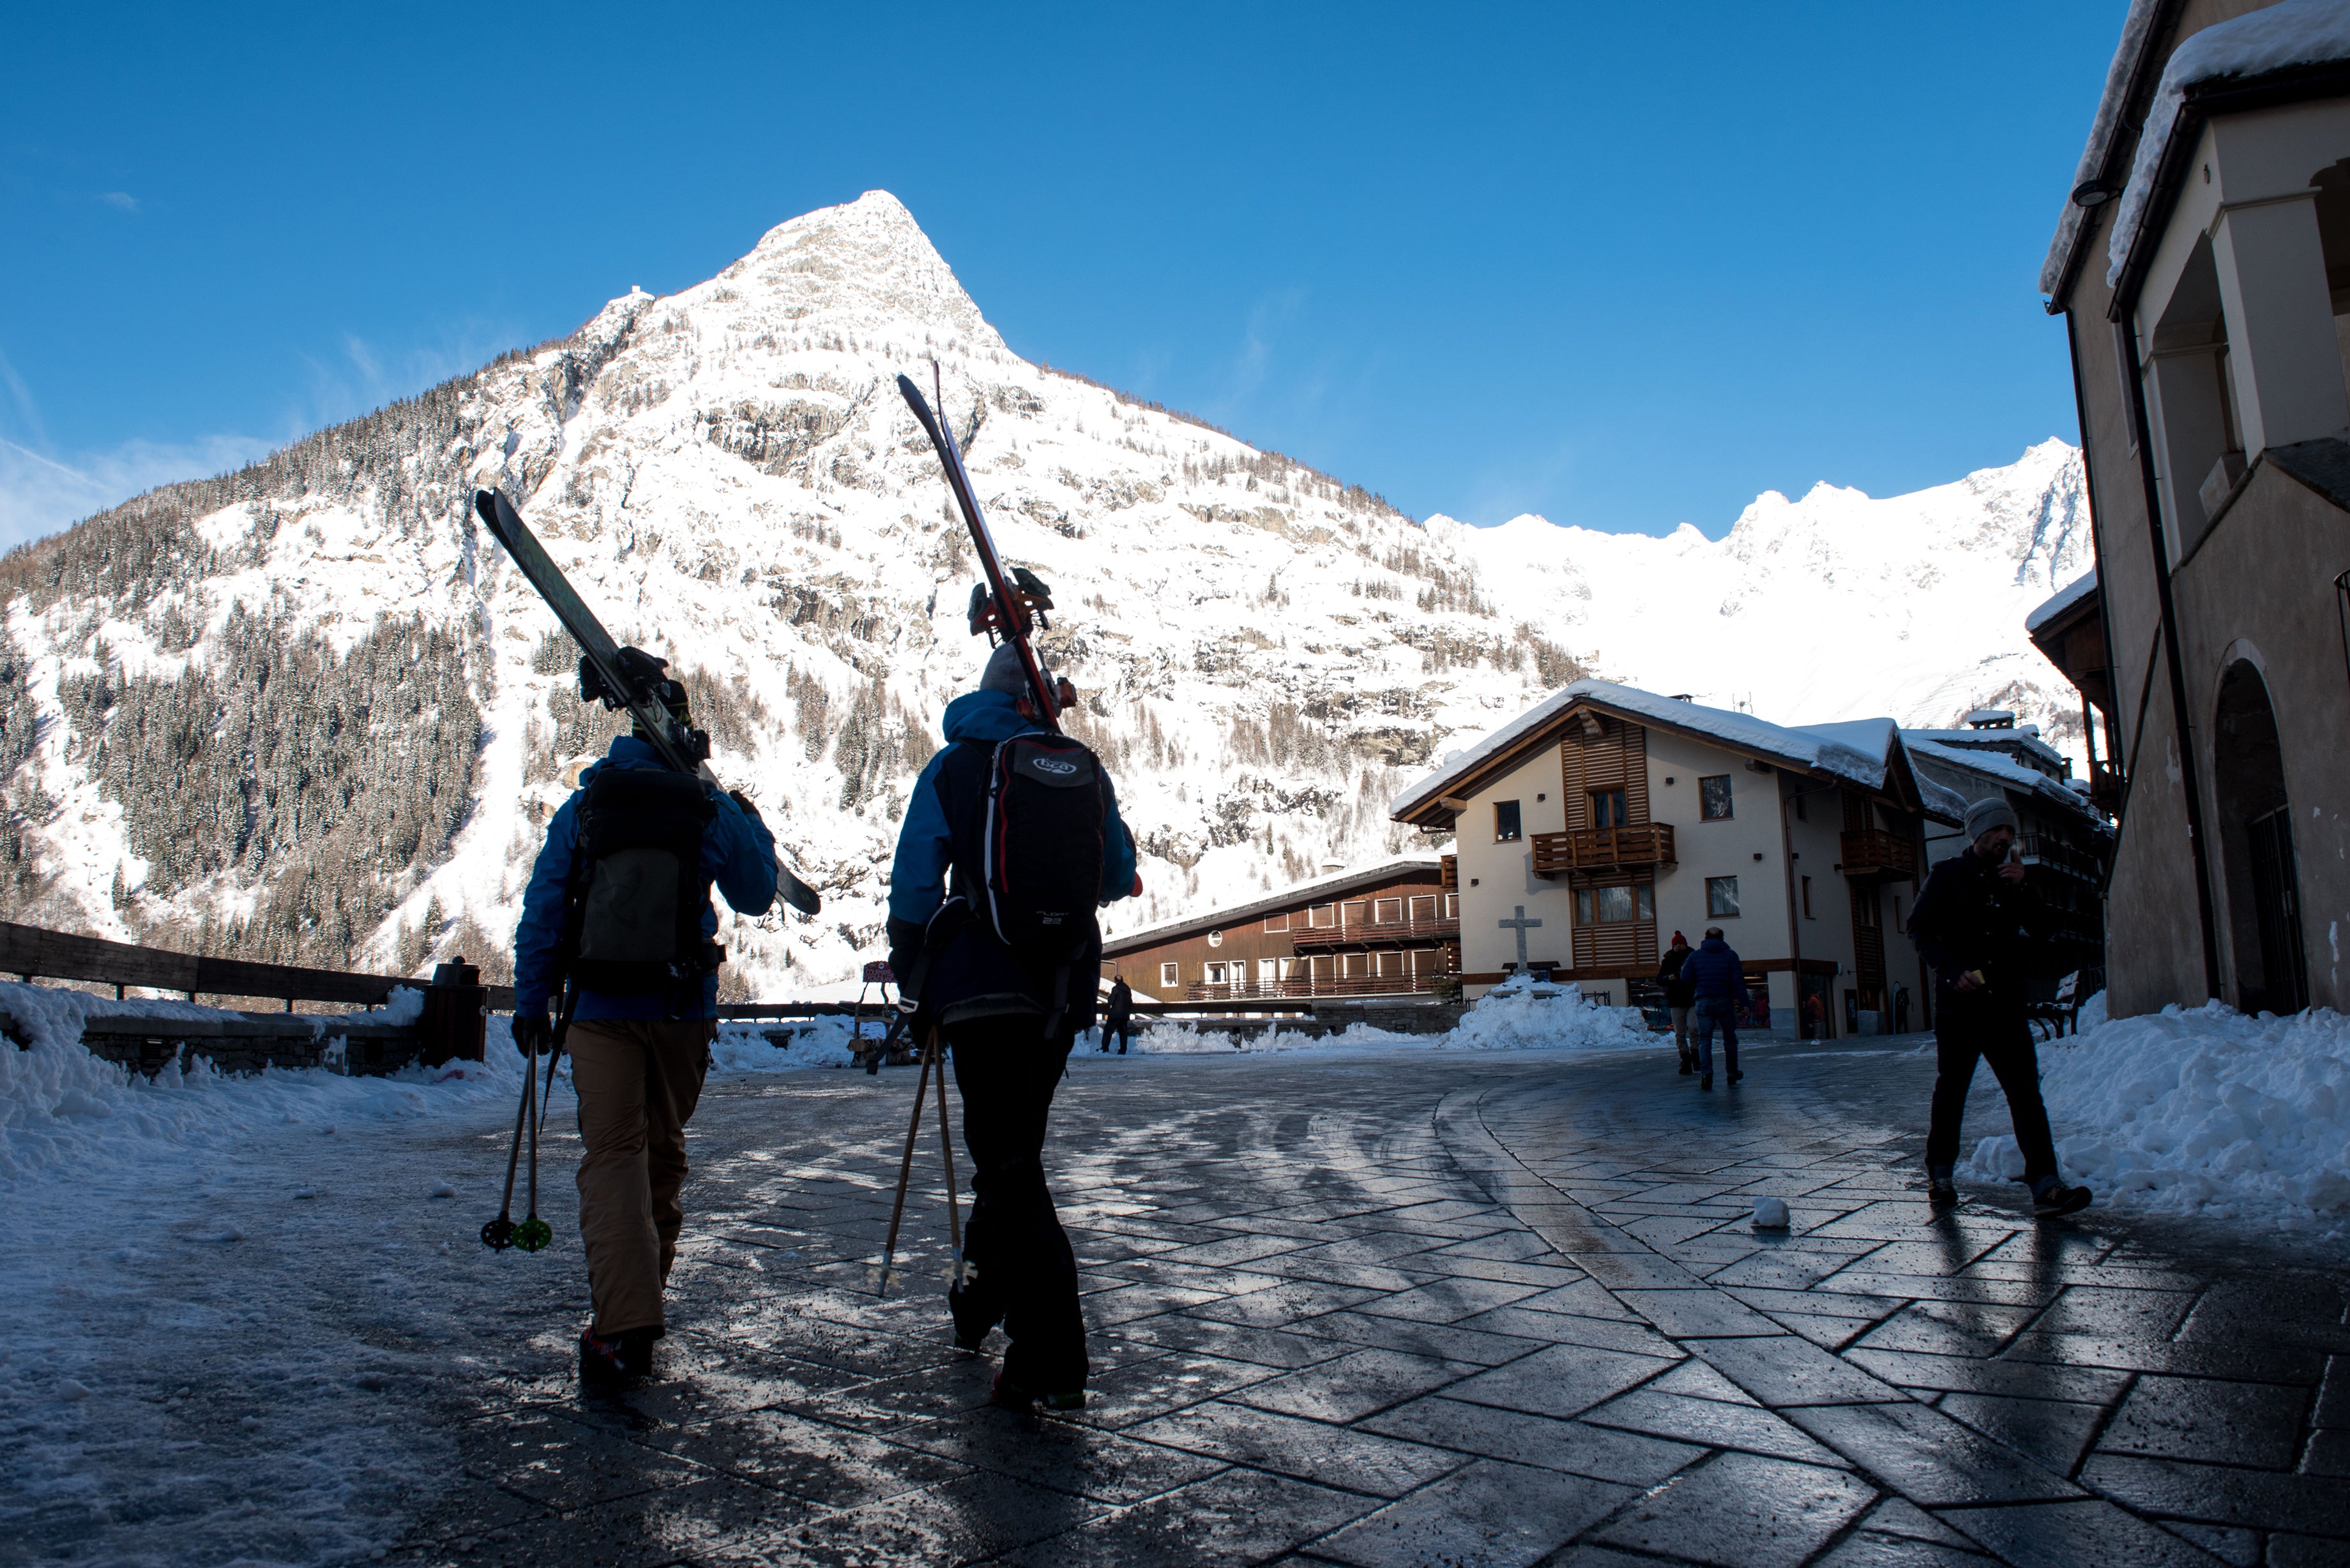 Two skiers walk to lift through Italian village